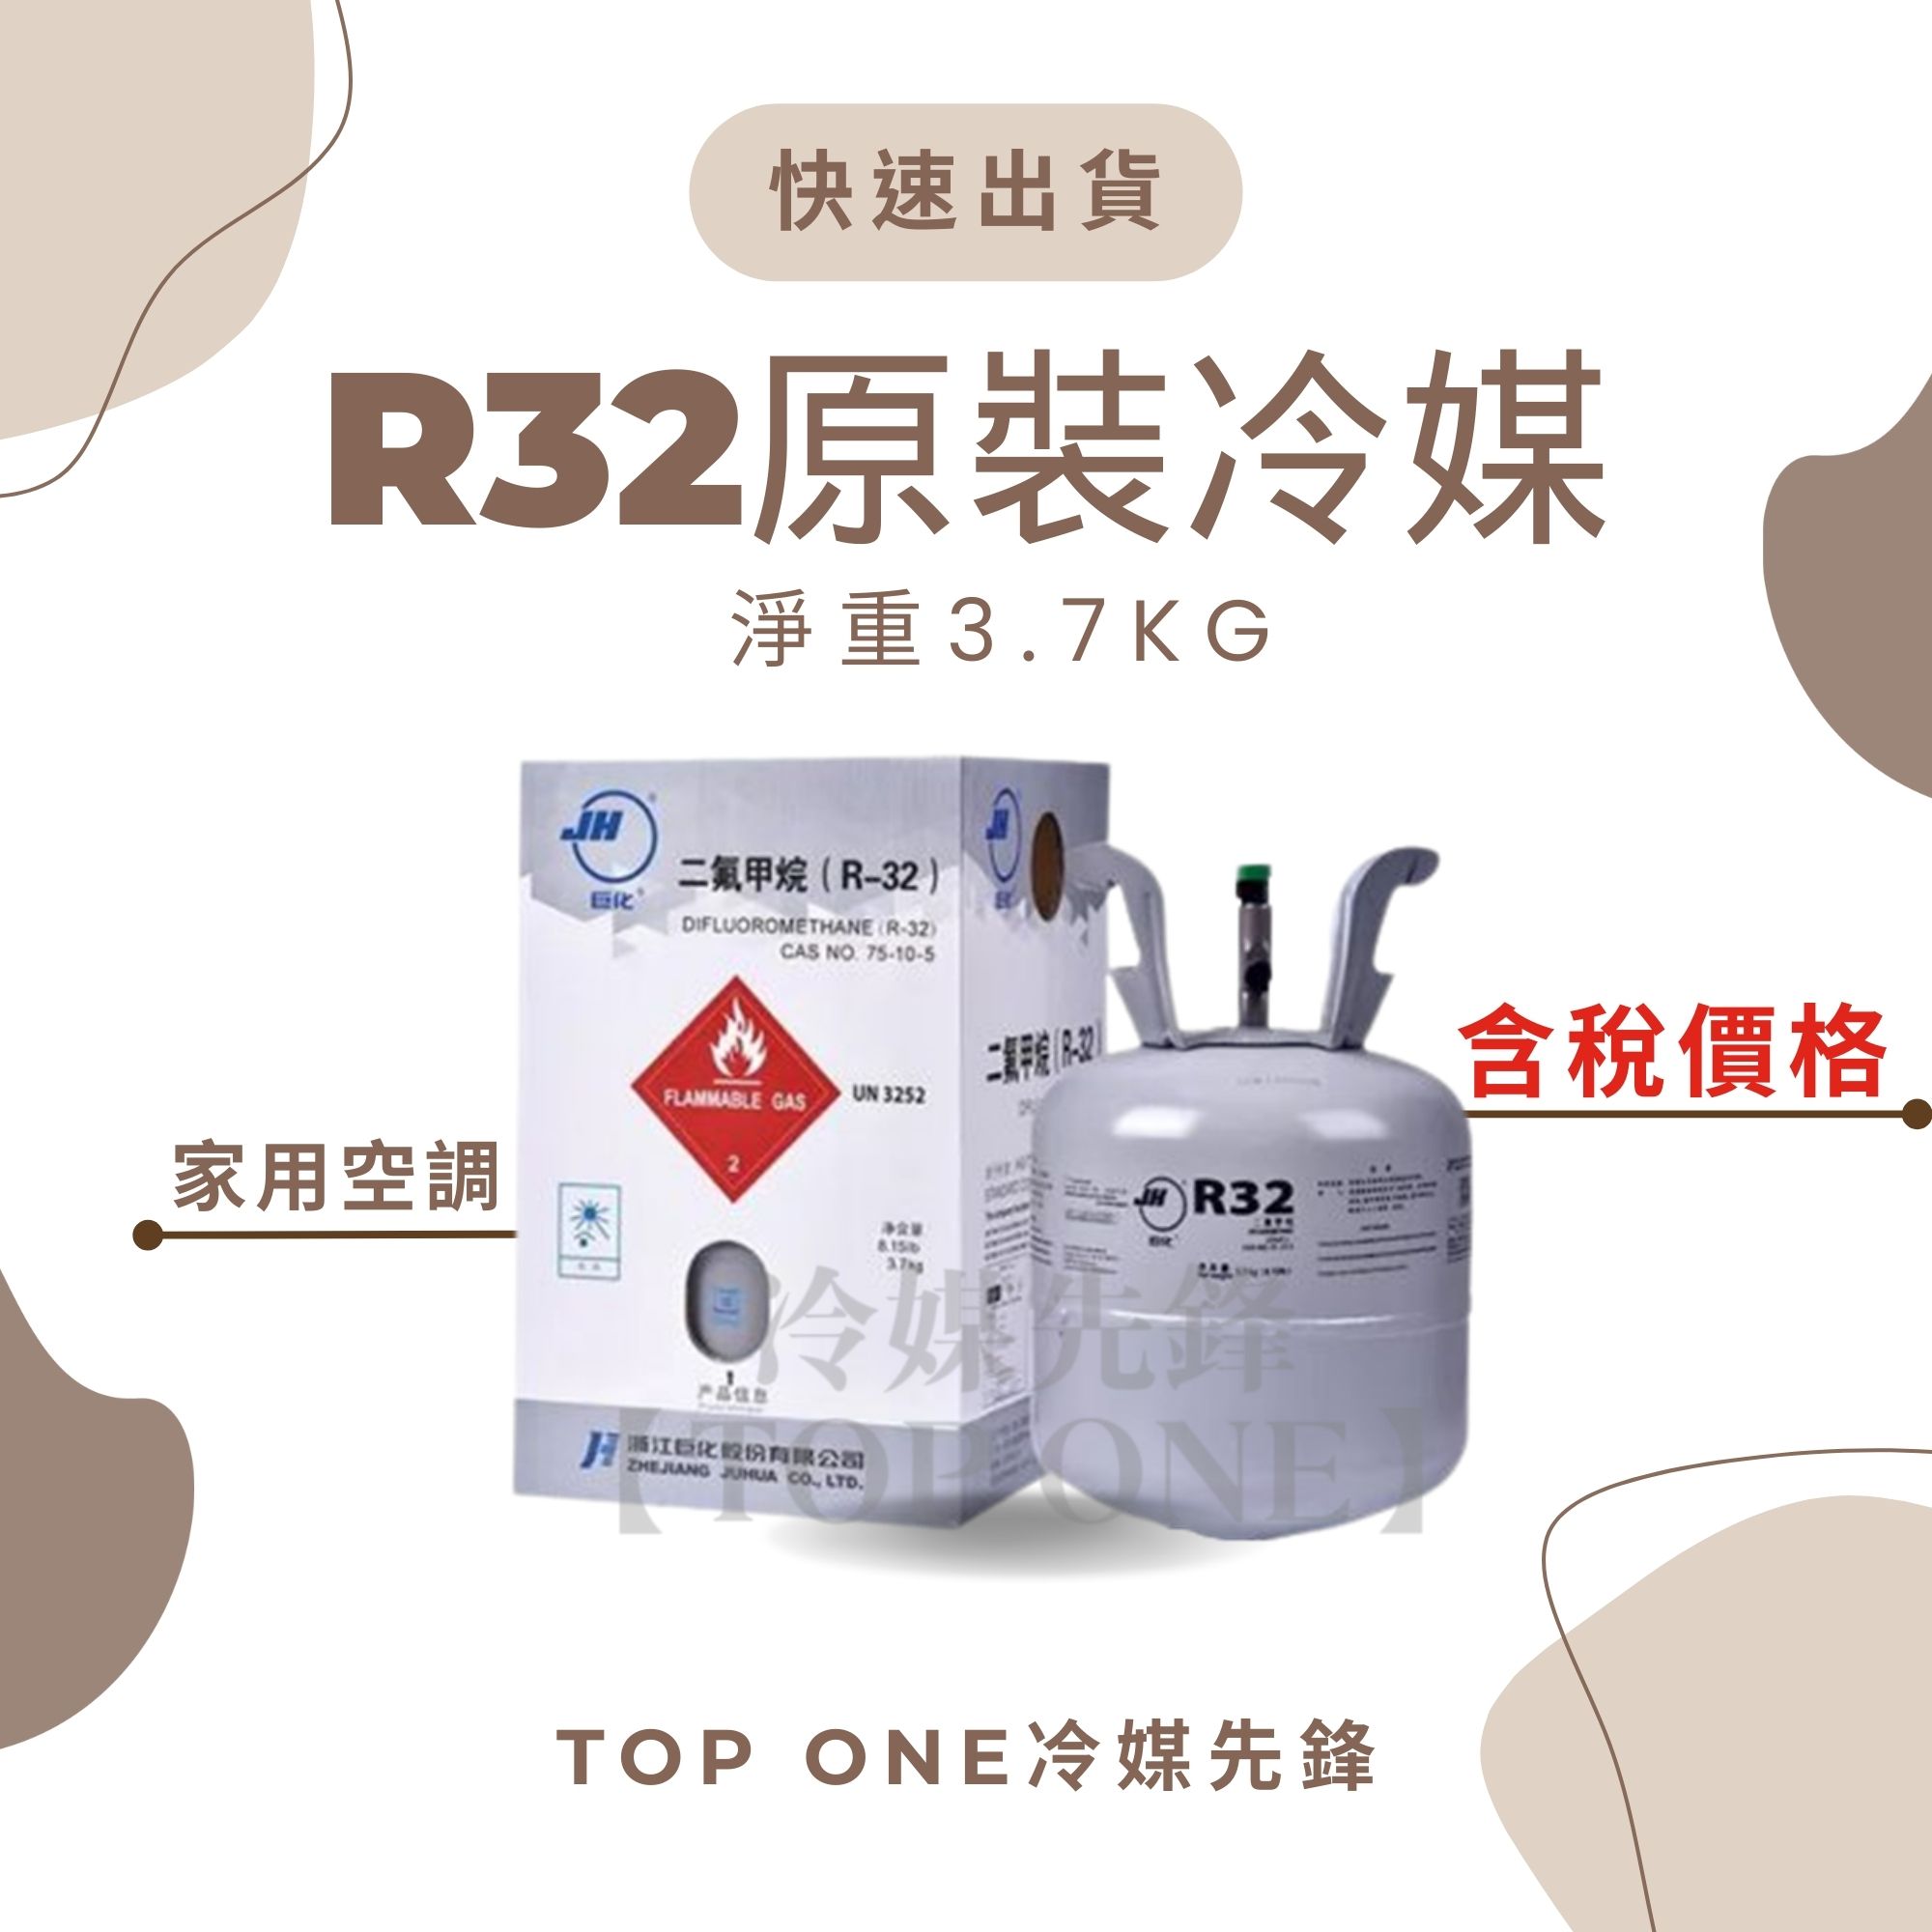 R32冷媒 大金冷氣補冷媒 淨重3.7KG 空調維修 台灣現貨 1A03237